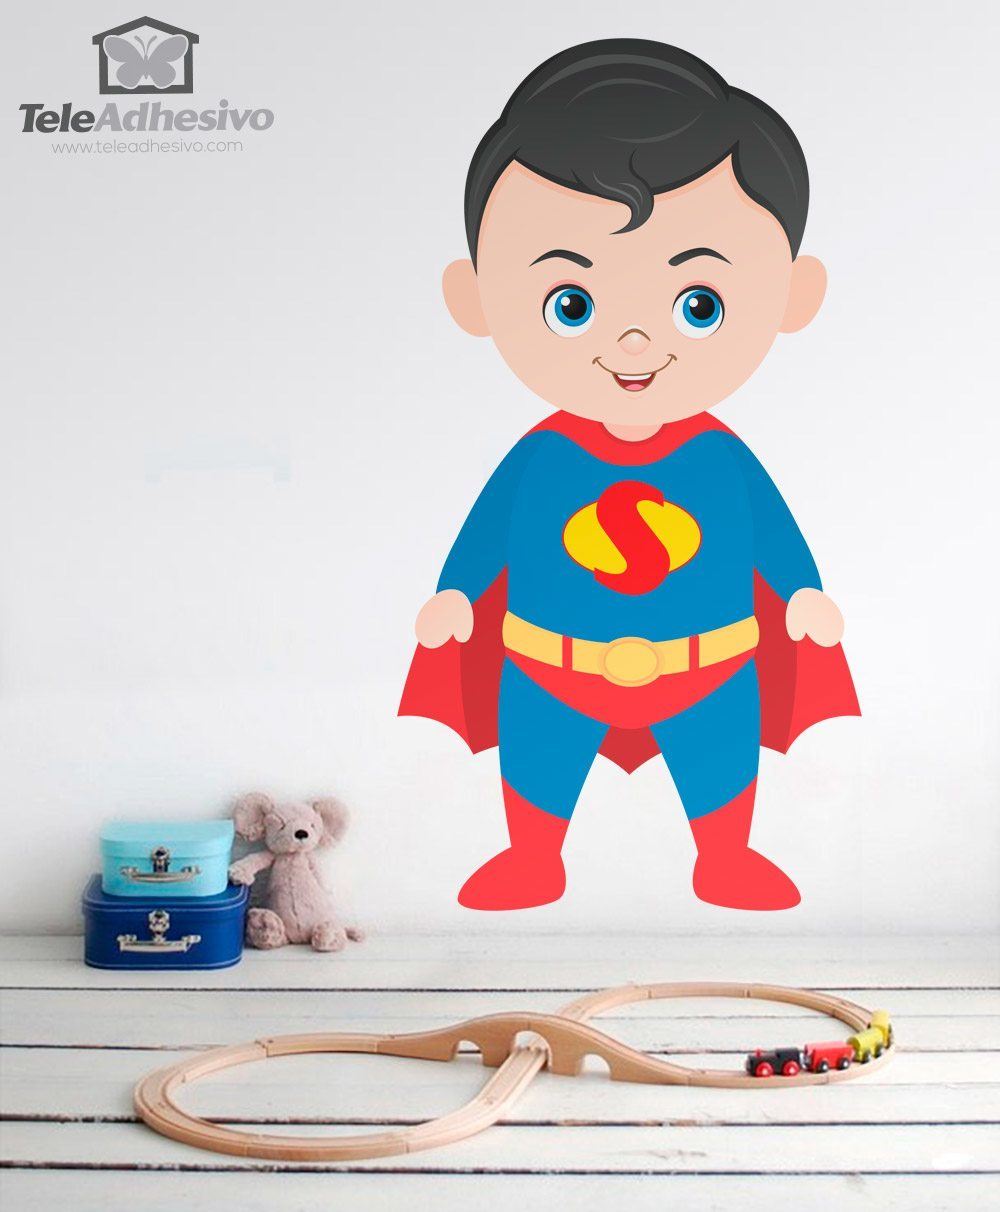 Vinilos Infantiles: Superman Bebé